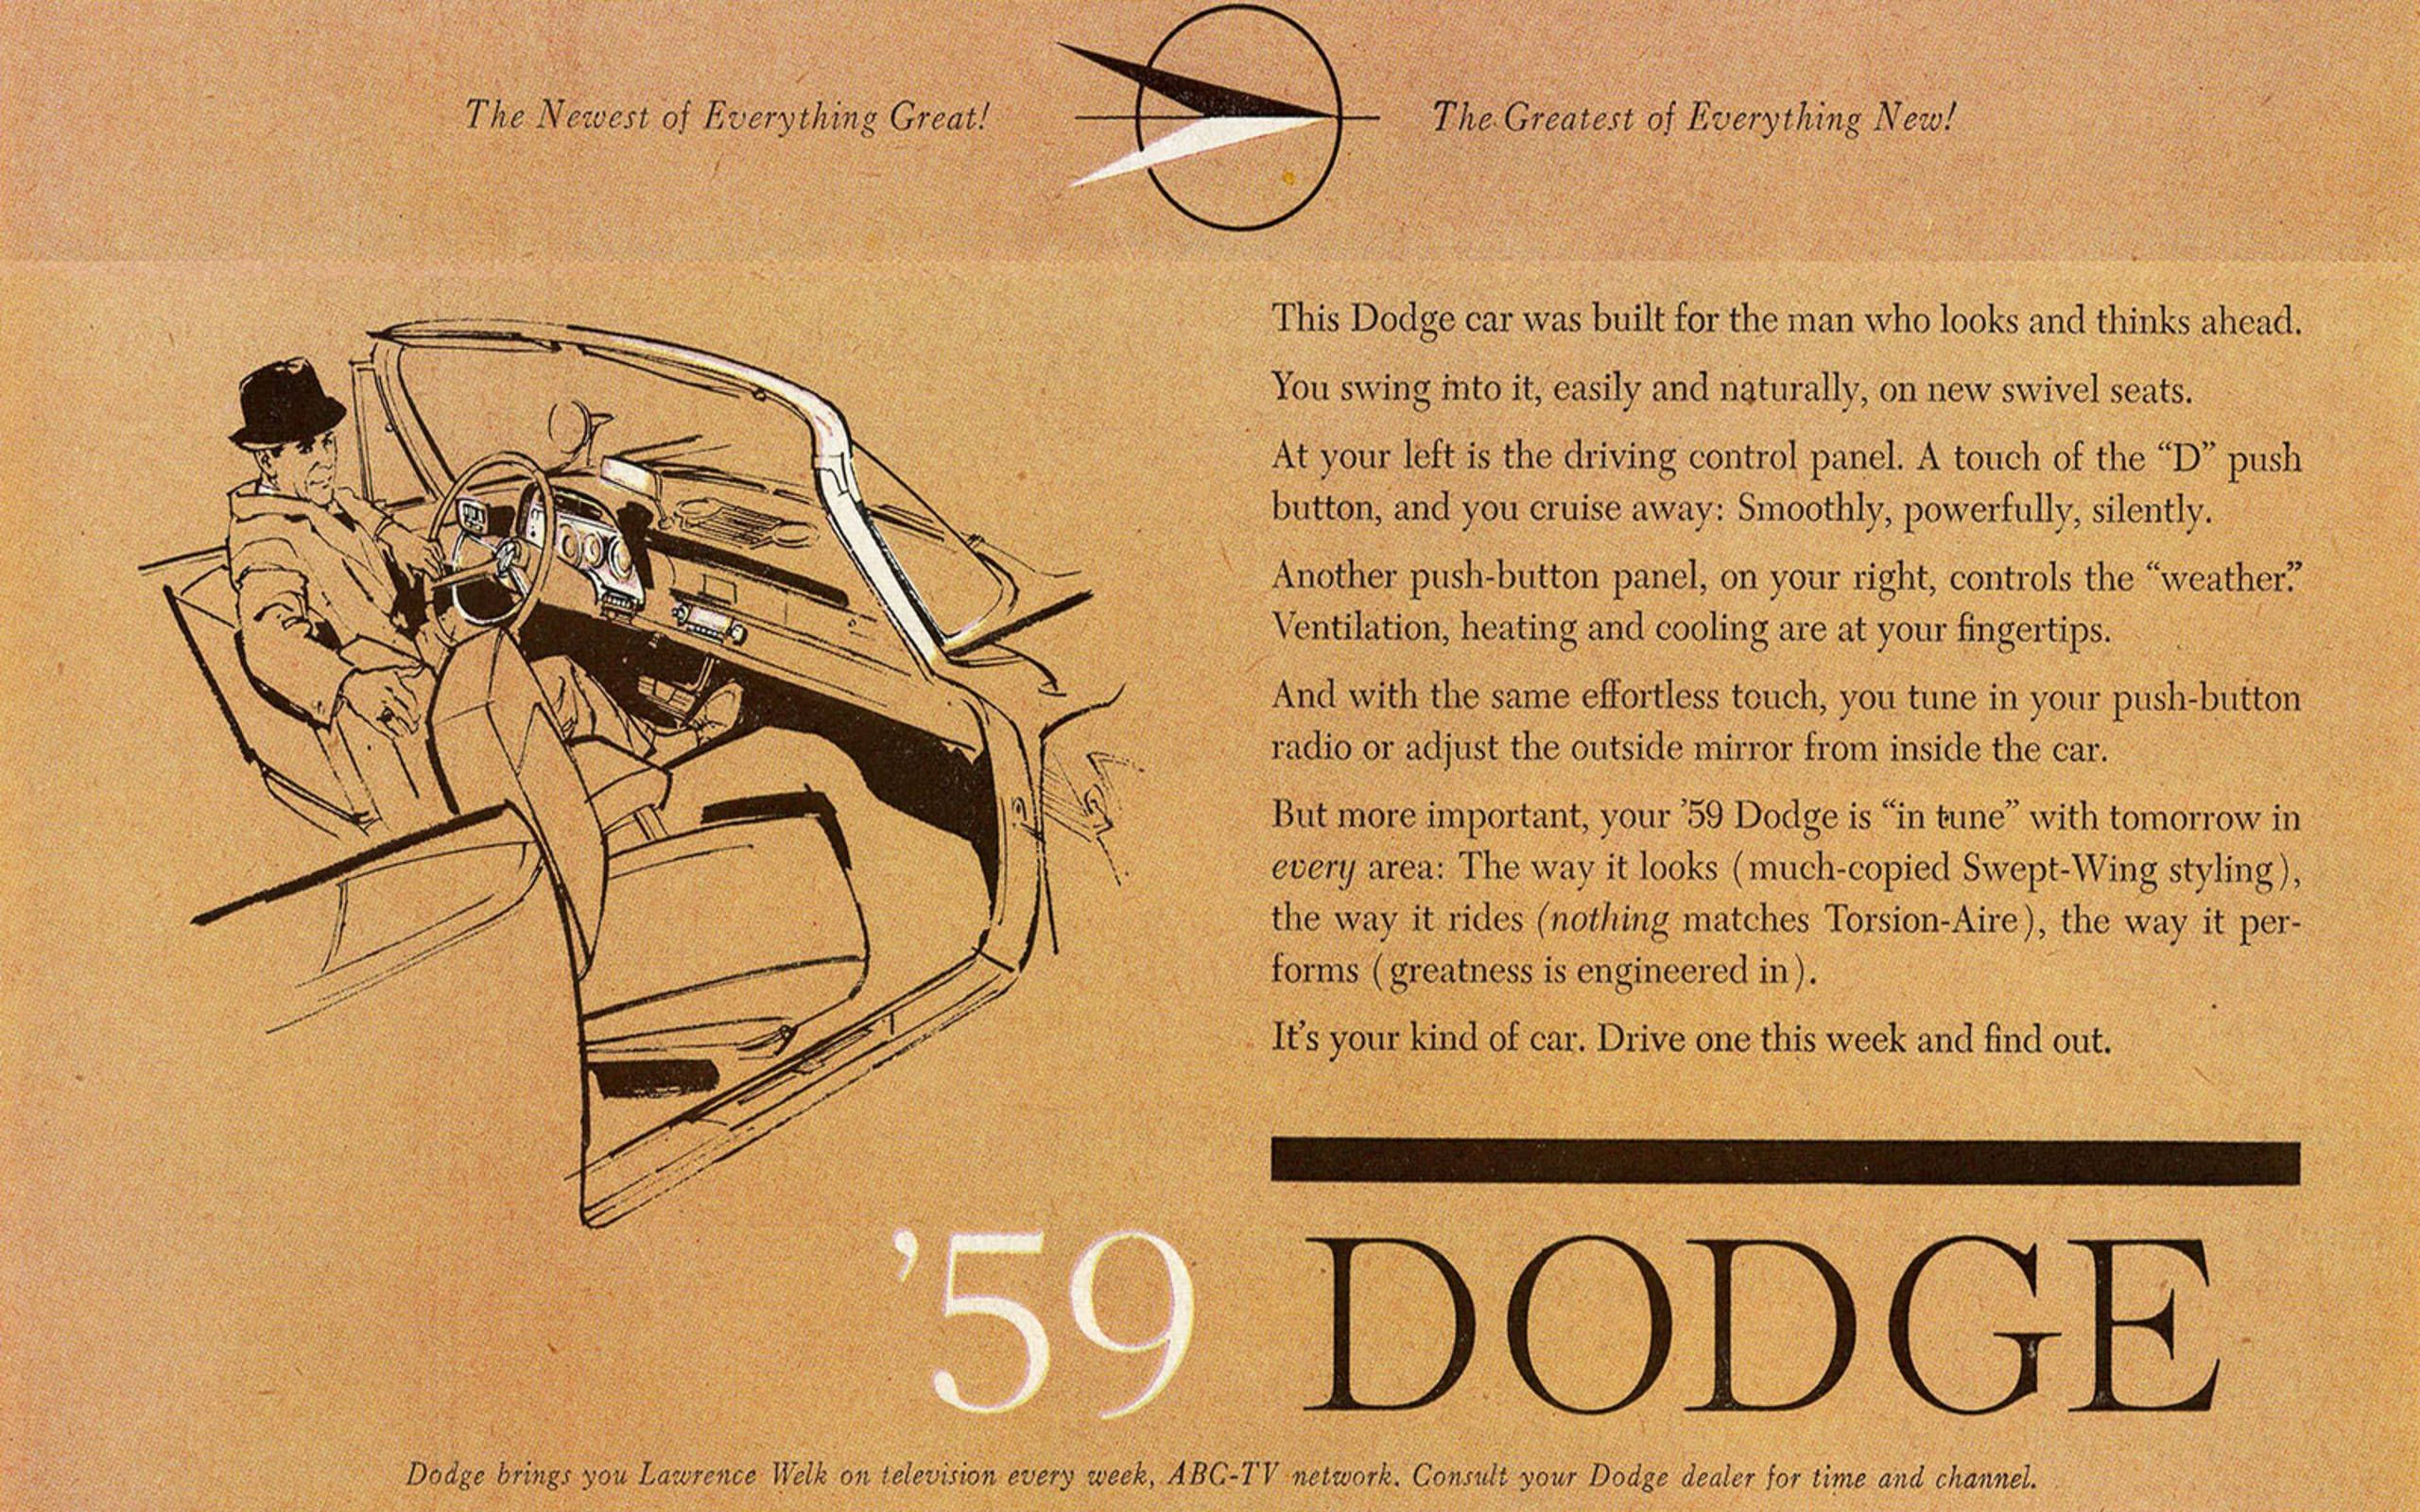 1959 Dodge advertising card Chrysler Archives 7